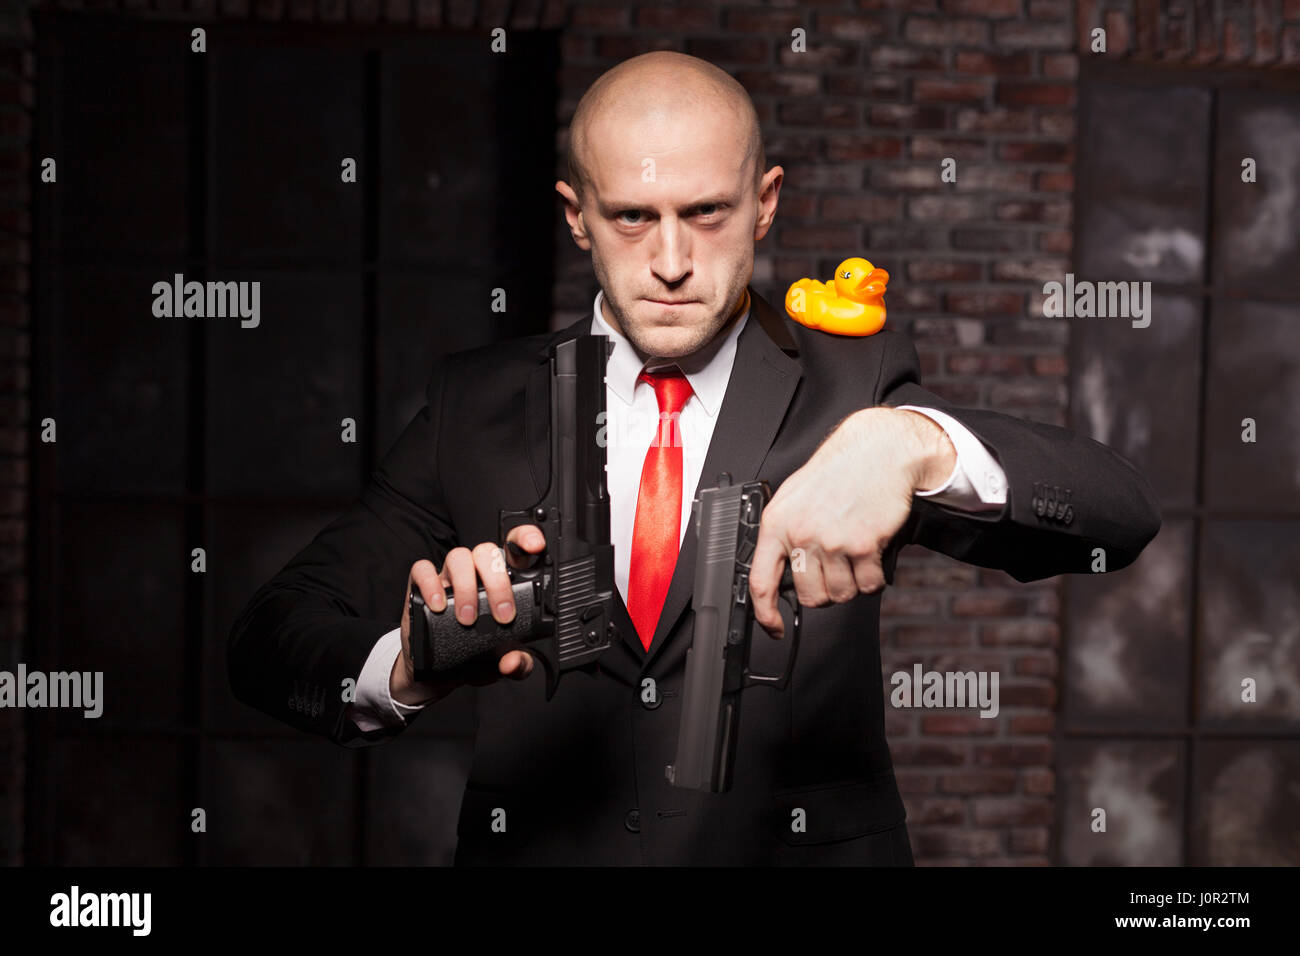 Contrat en colère assassin dans costume et cravate rouge vise un pistolet  sur petit canard. Concept d'agent secret professionnel Photo Stock - Alamy